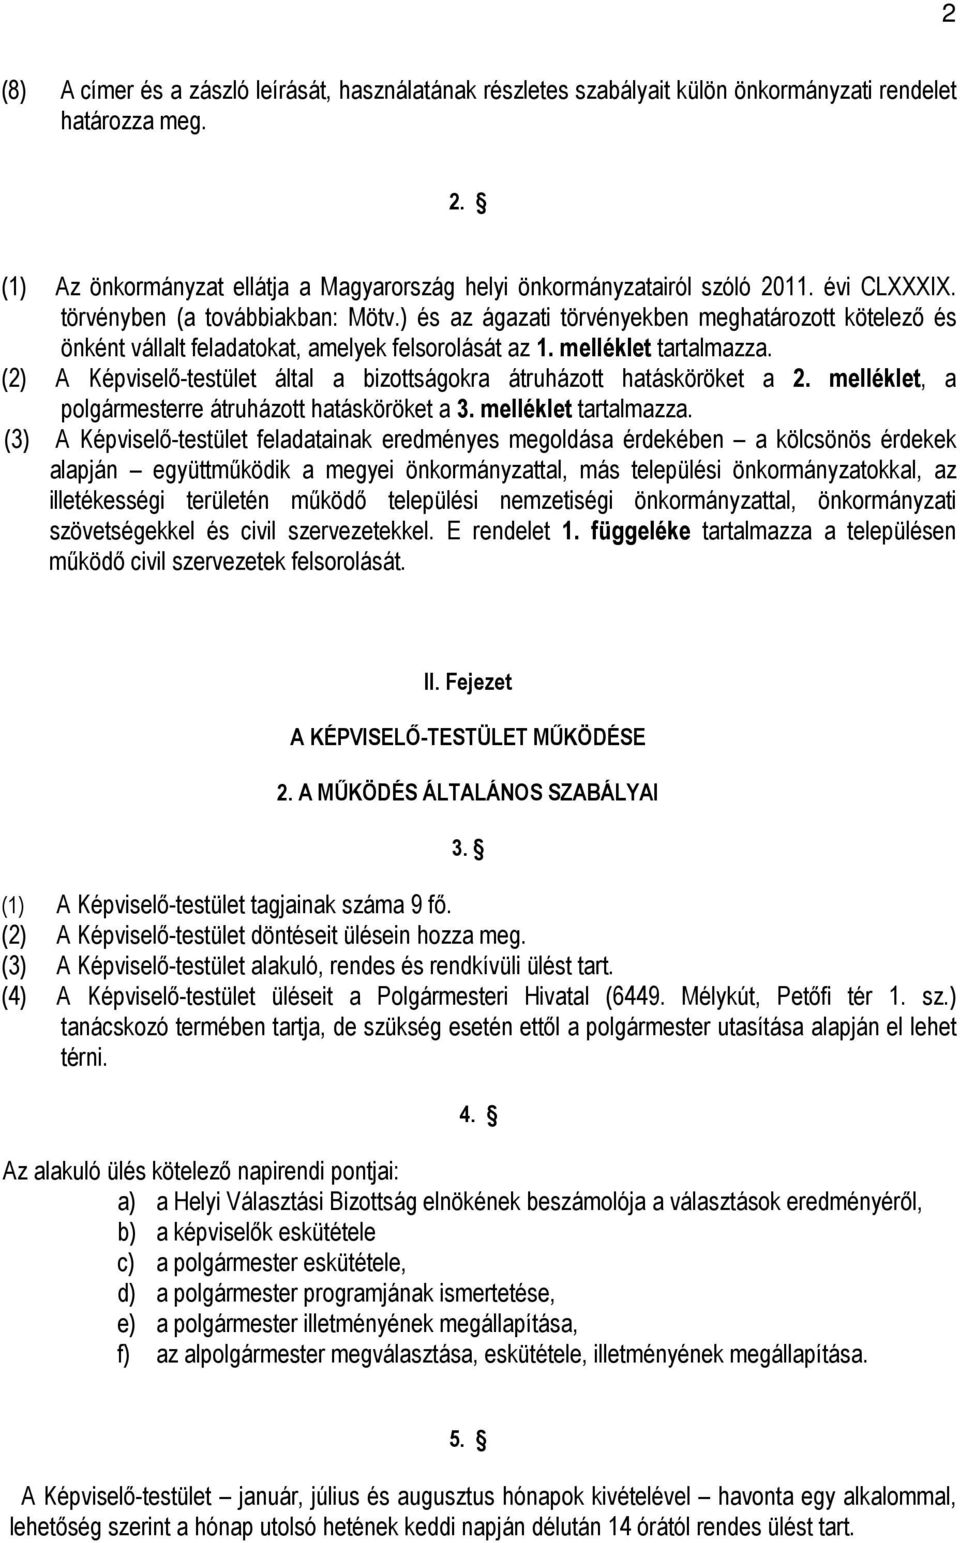 (2) A Képviselı-testület által a bizottságokra átruházott hatásköröket a 2. melléklet, a polgármesterre átruházott hatásköröket a 3. melléklet tartalmazza.